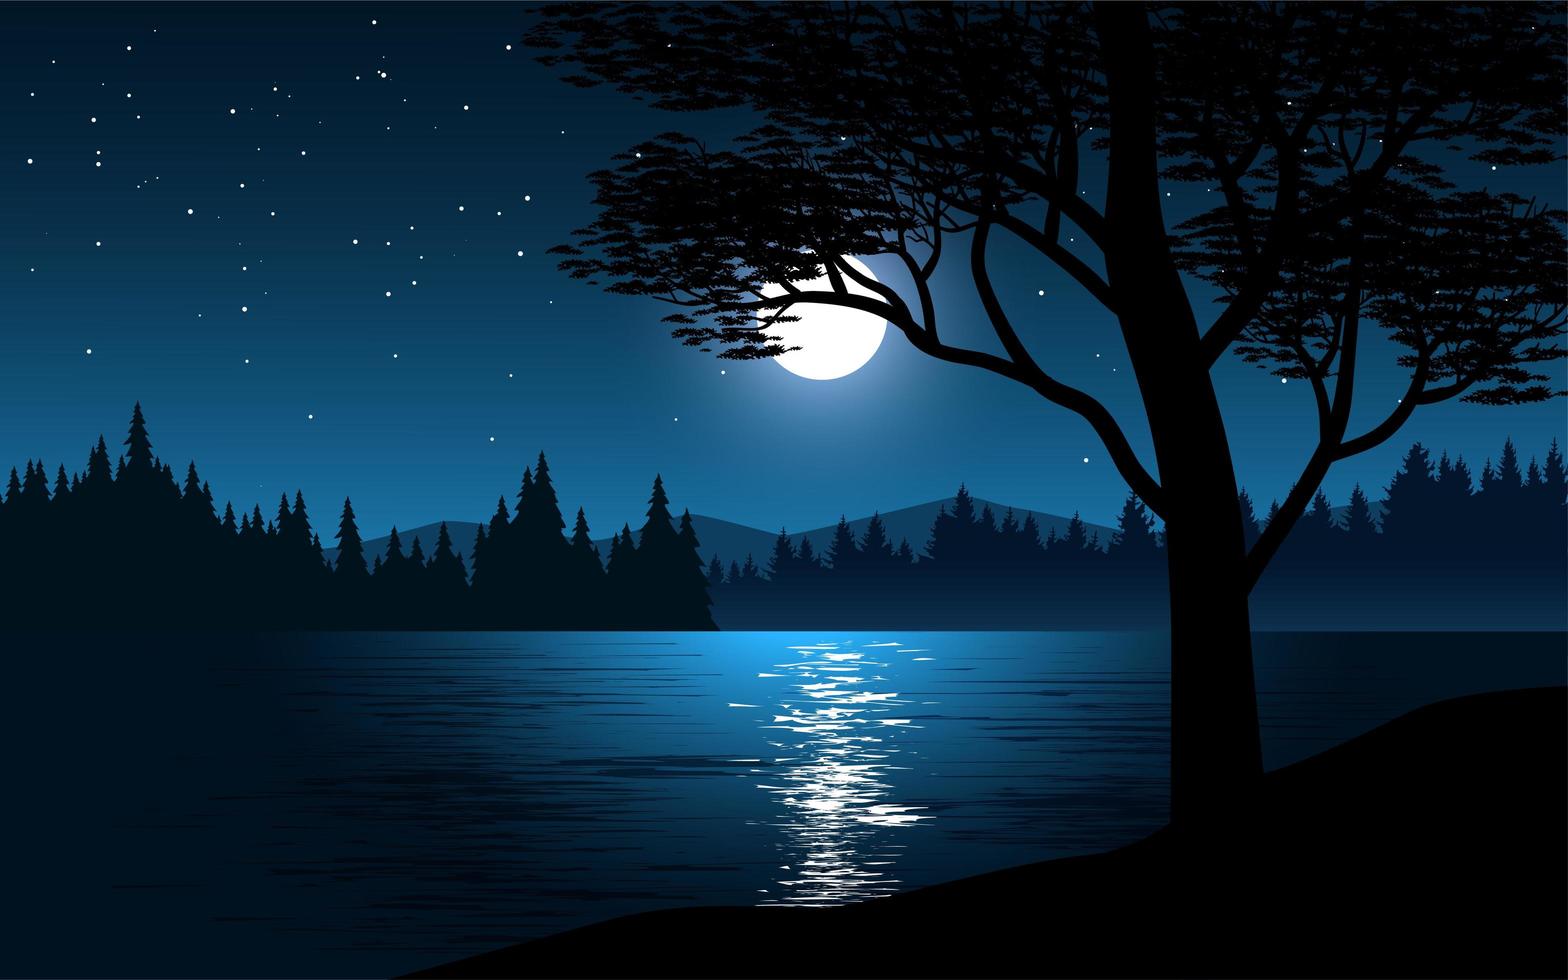 Moon reflection on lake at night vector